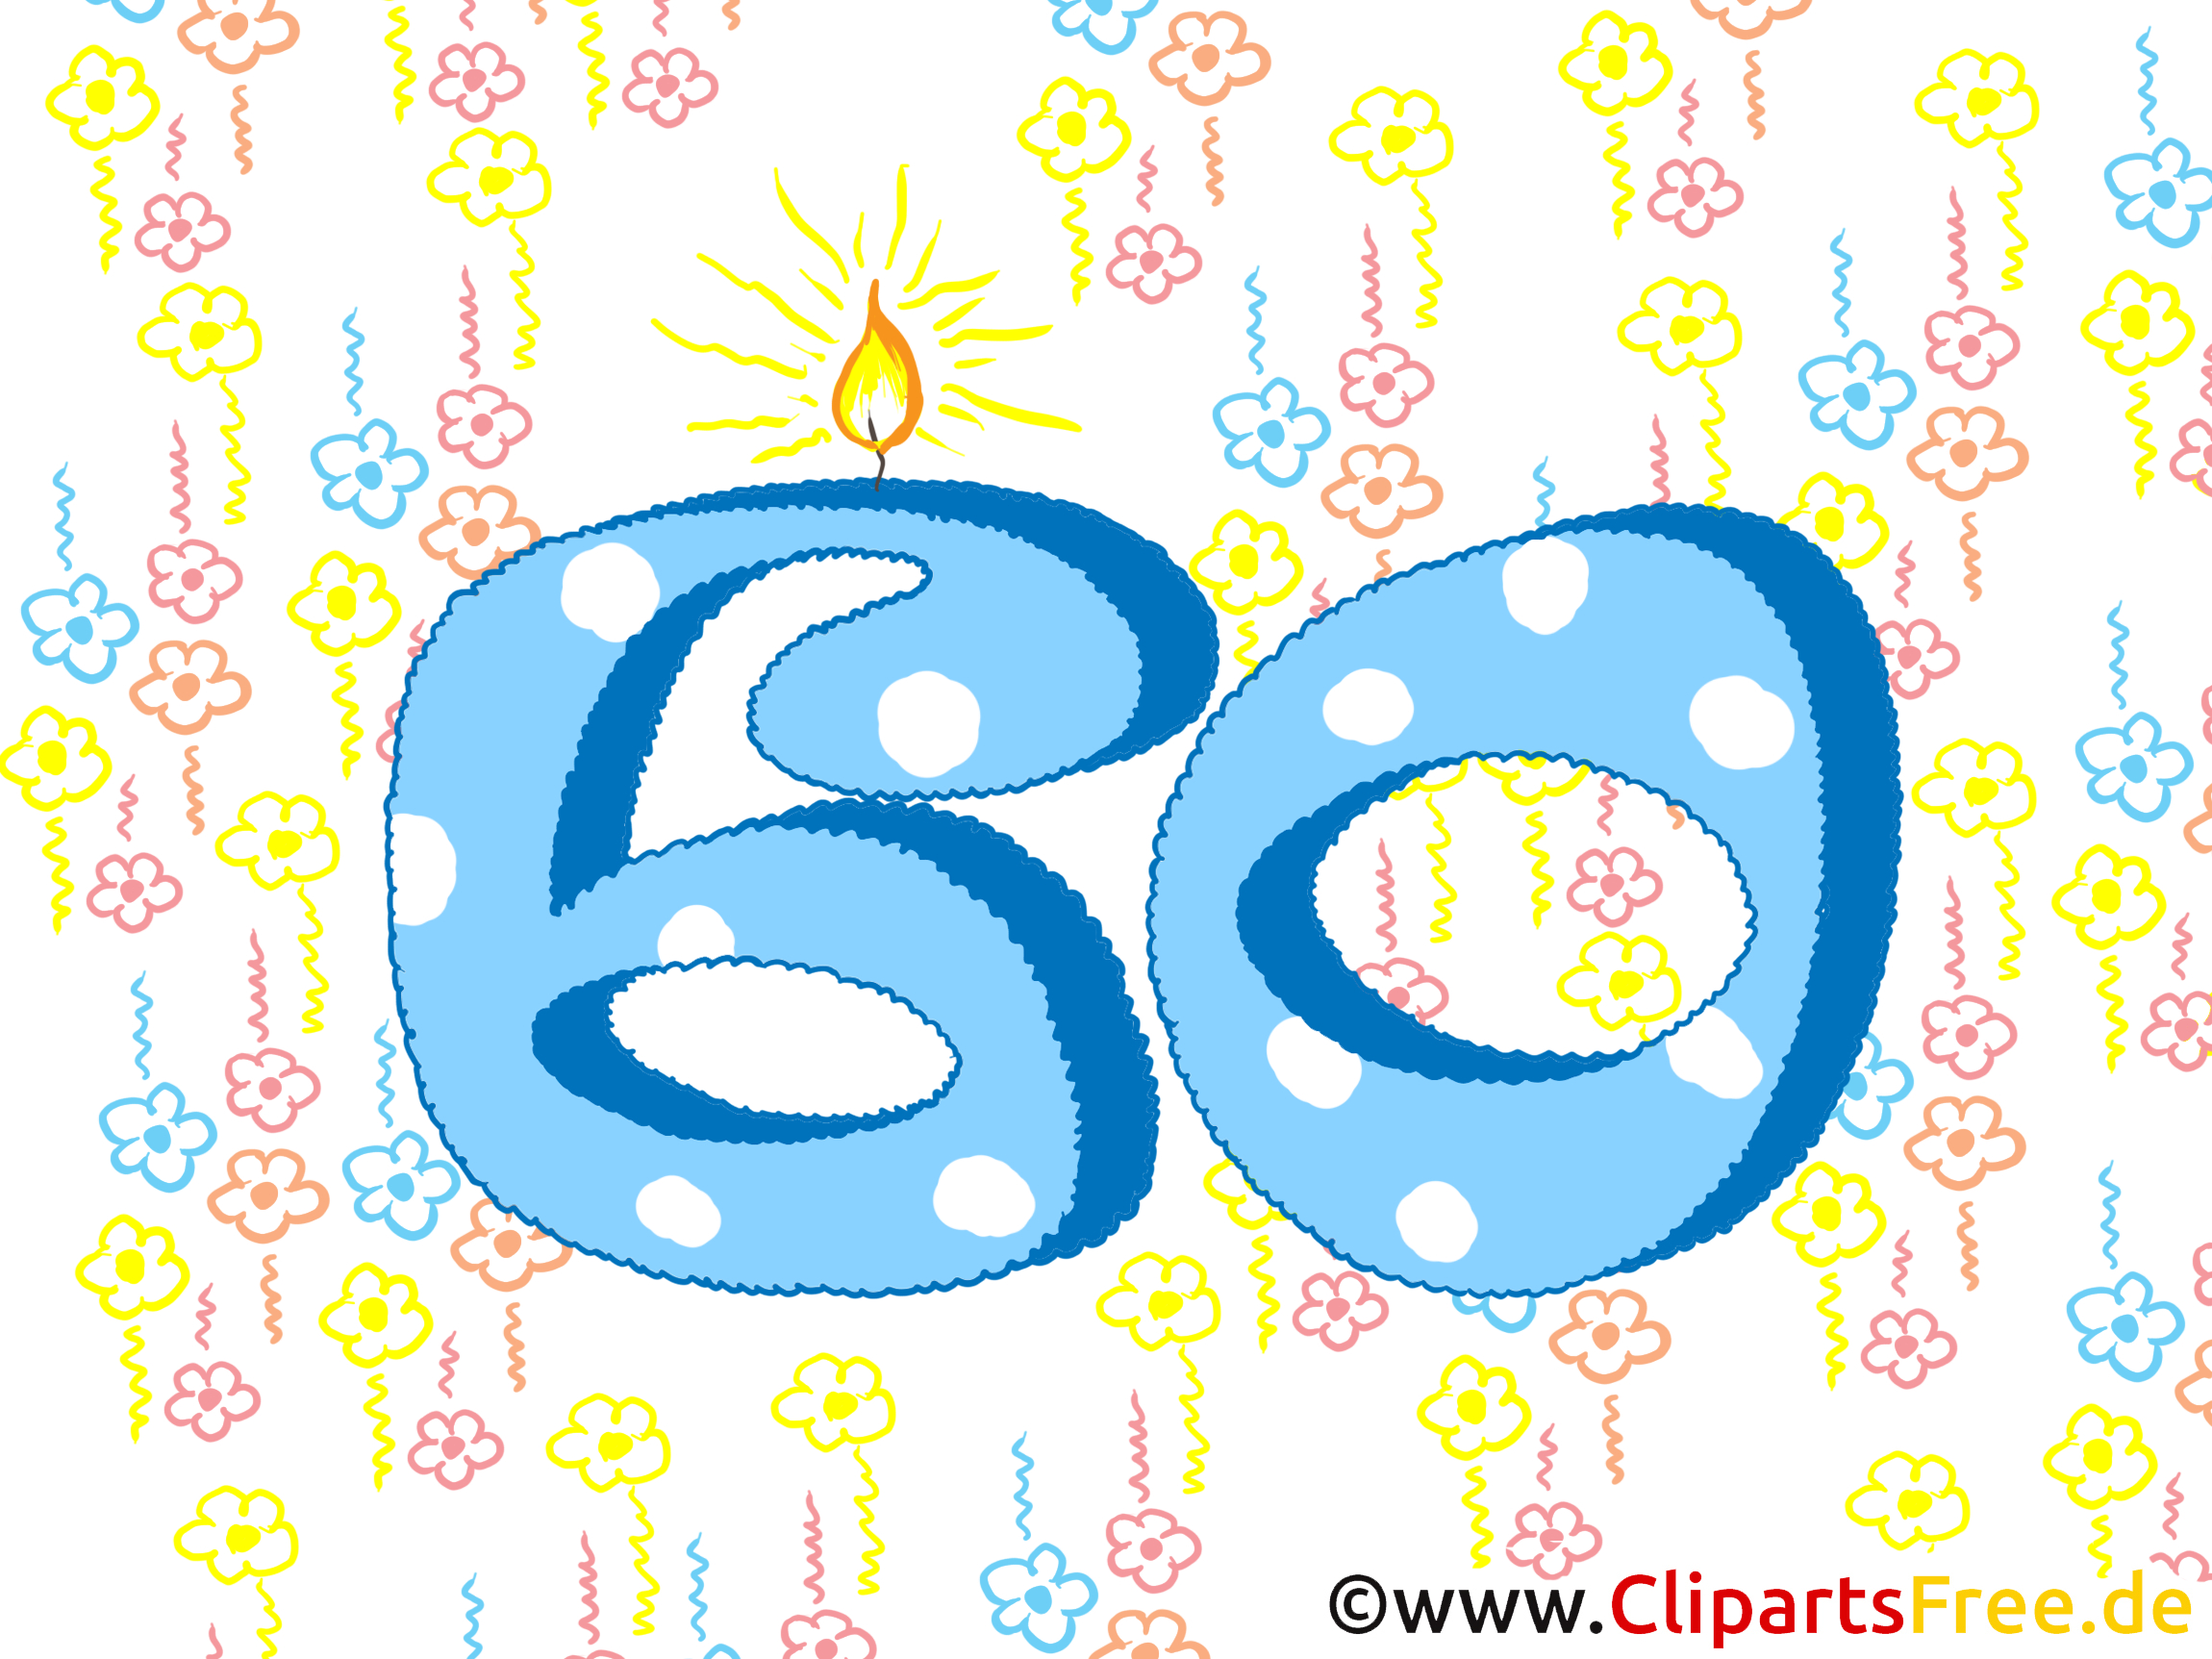 Geburtstagswünsche Zum 60 - Glückwunschkarte Gratis bestimmt für Zum 60 Geburtstag